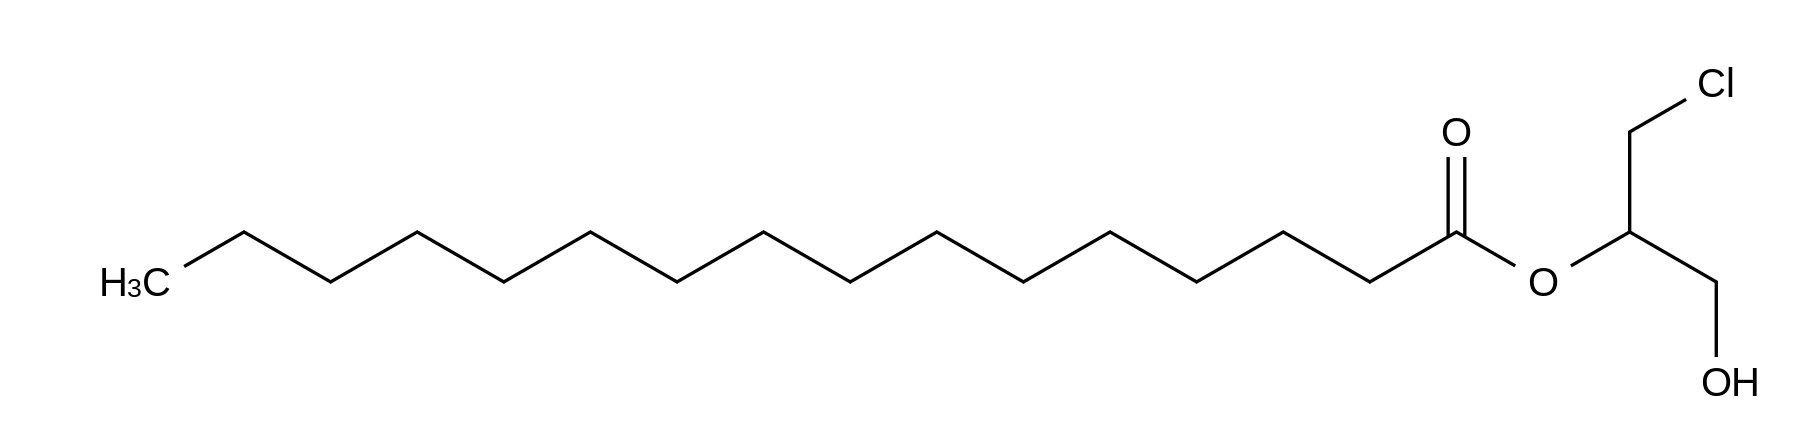 rac 2-Palmitoyl-3-chloropropanediol